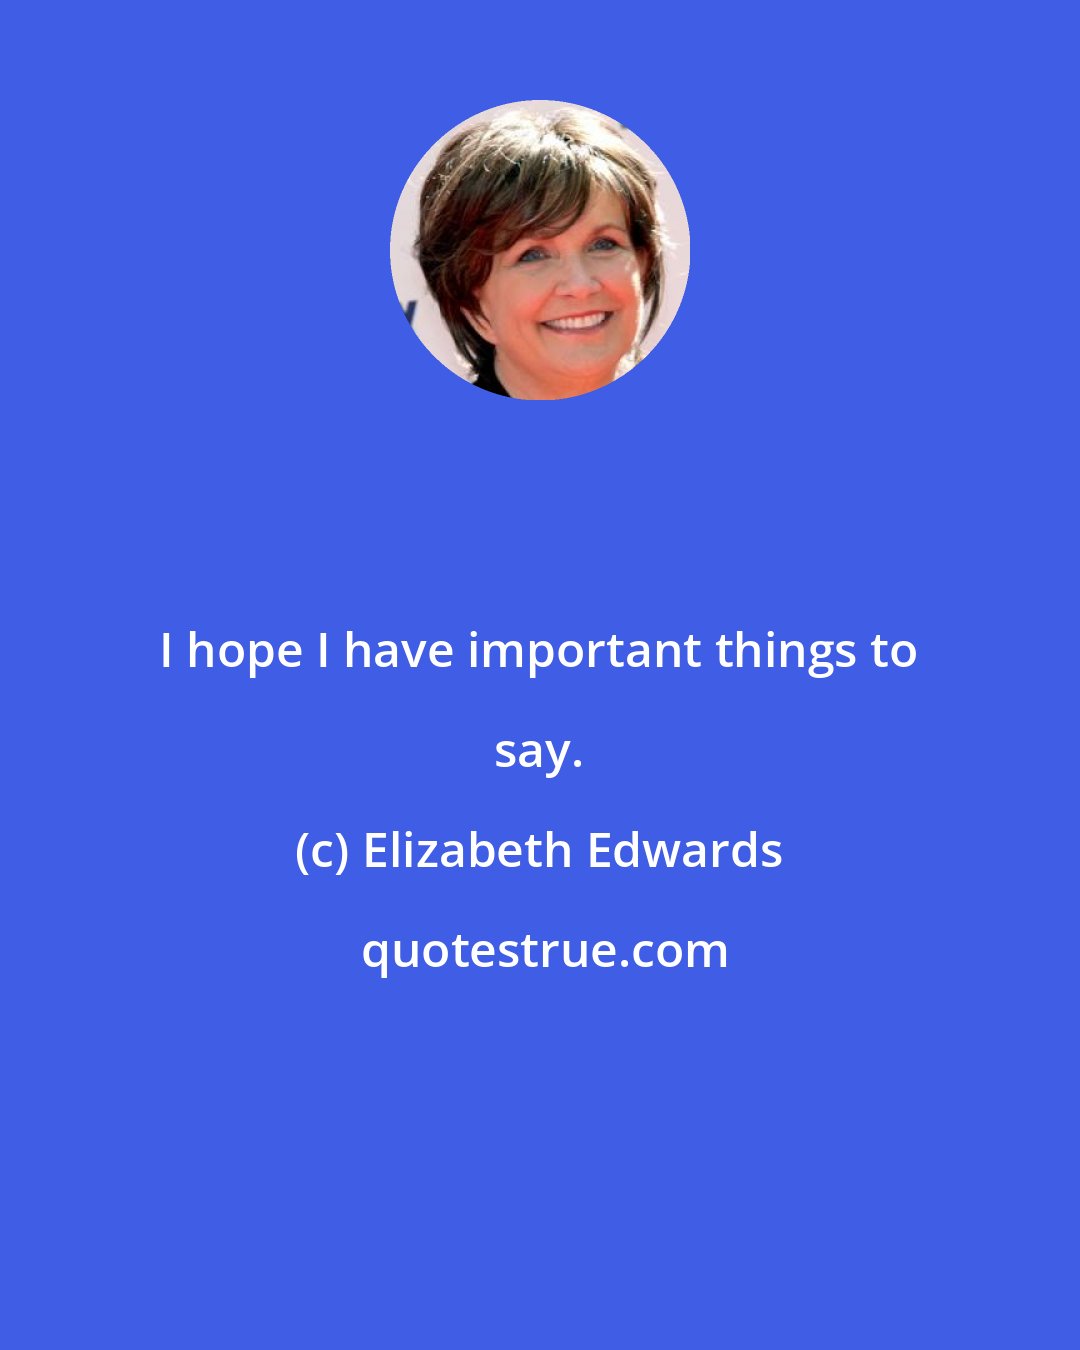 Elizabeth Edwards: I hope I have important things to say.